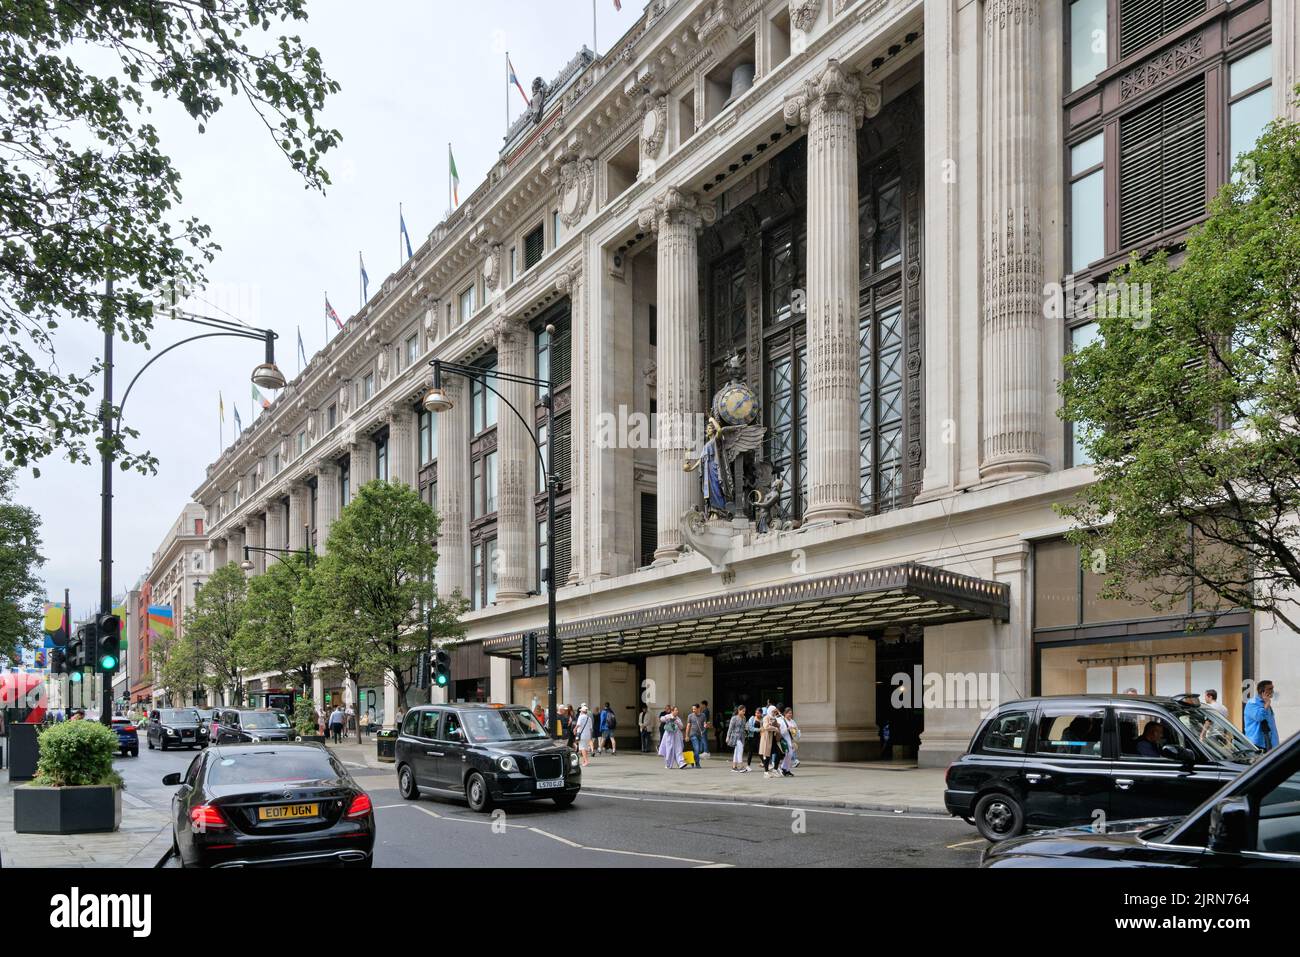 La fachada principal de los grandes almacenes Selfridges el día de verano, Oxford Street, West End de Londres, Inglaterra, Reino Unido Foto de stock